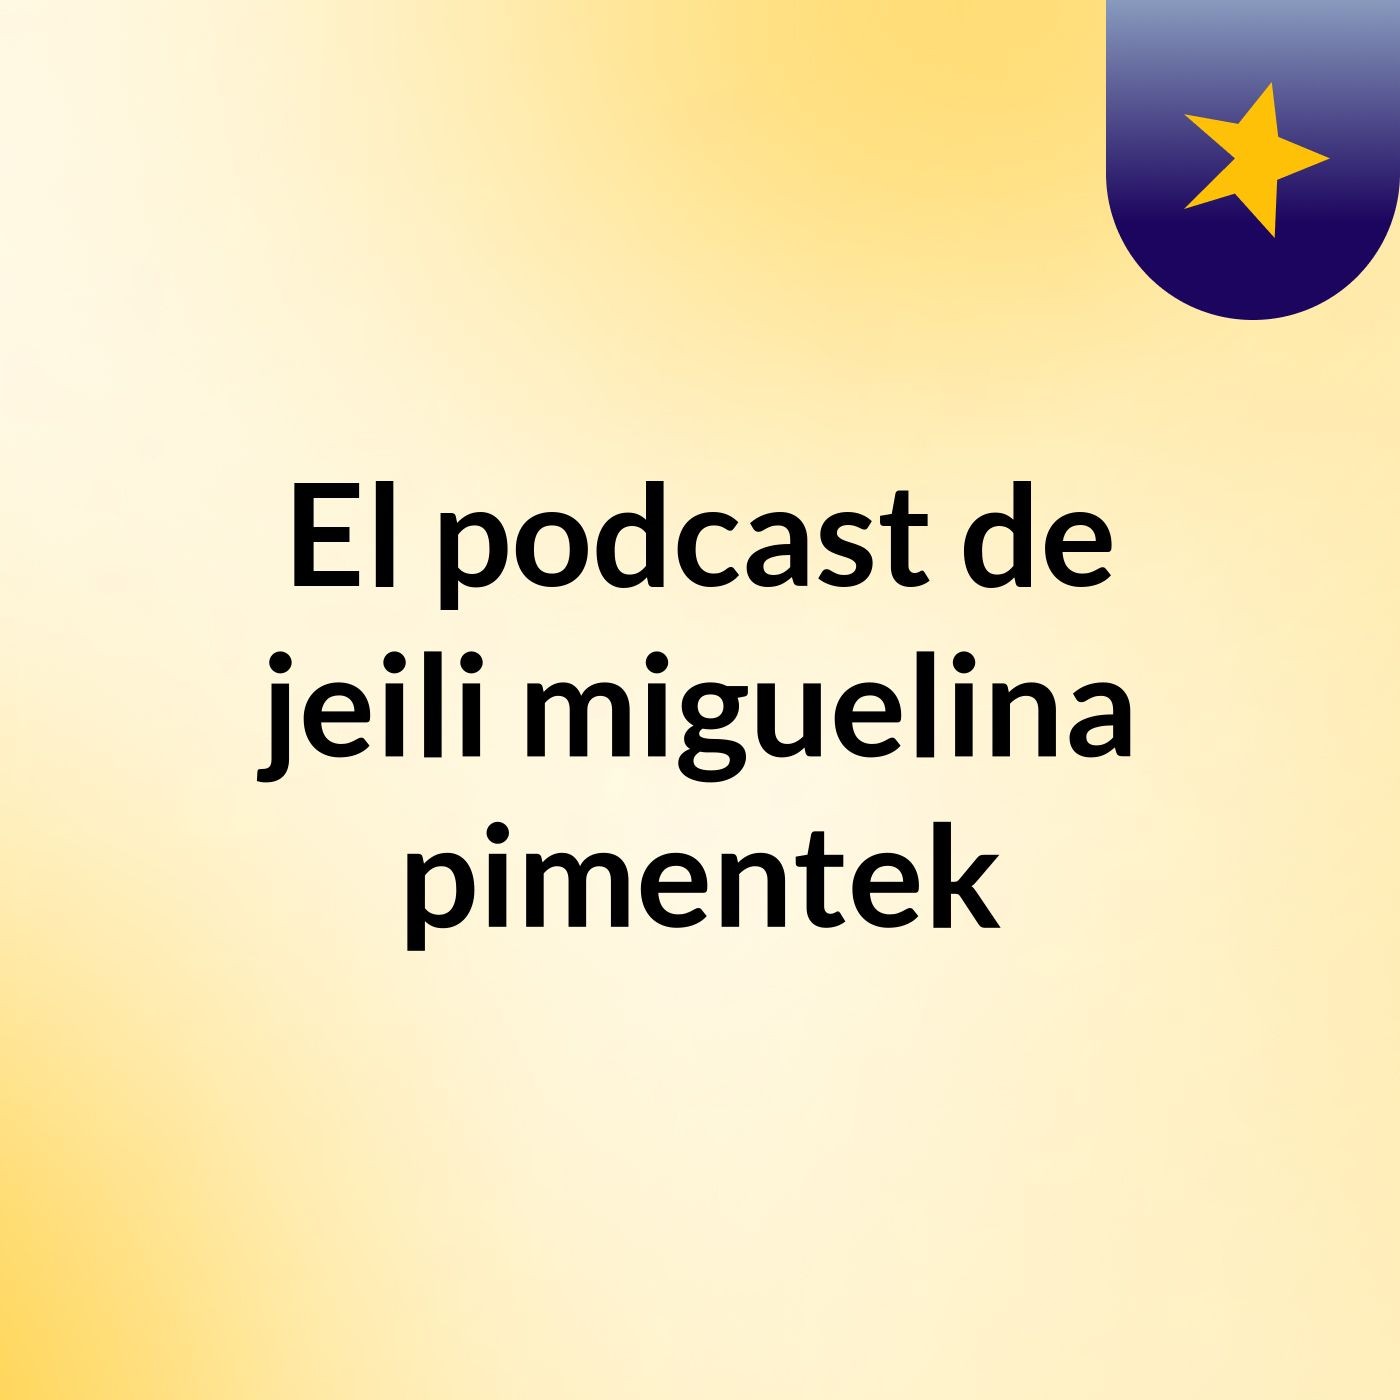 El podcast de jeili miguelina pimentek